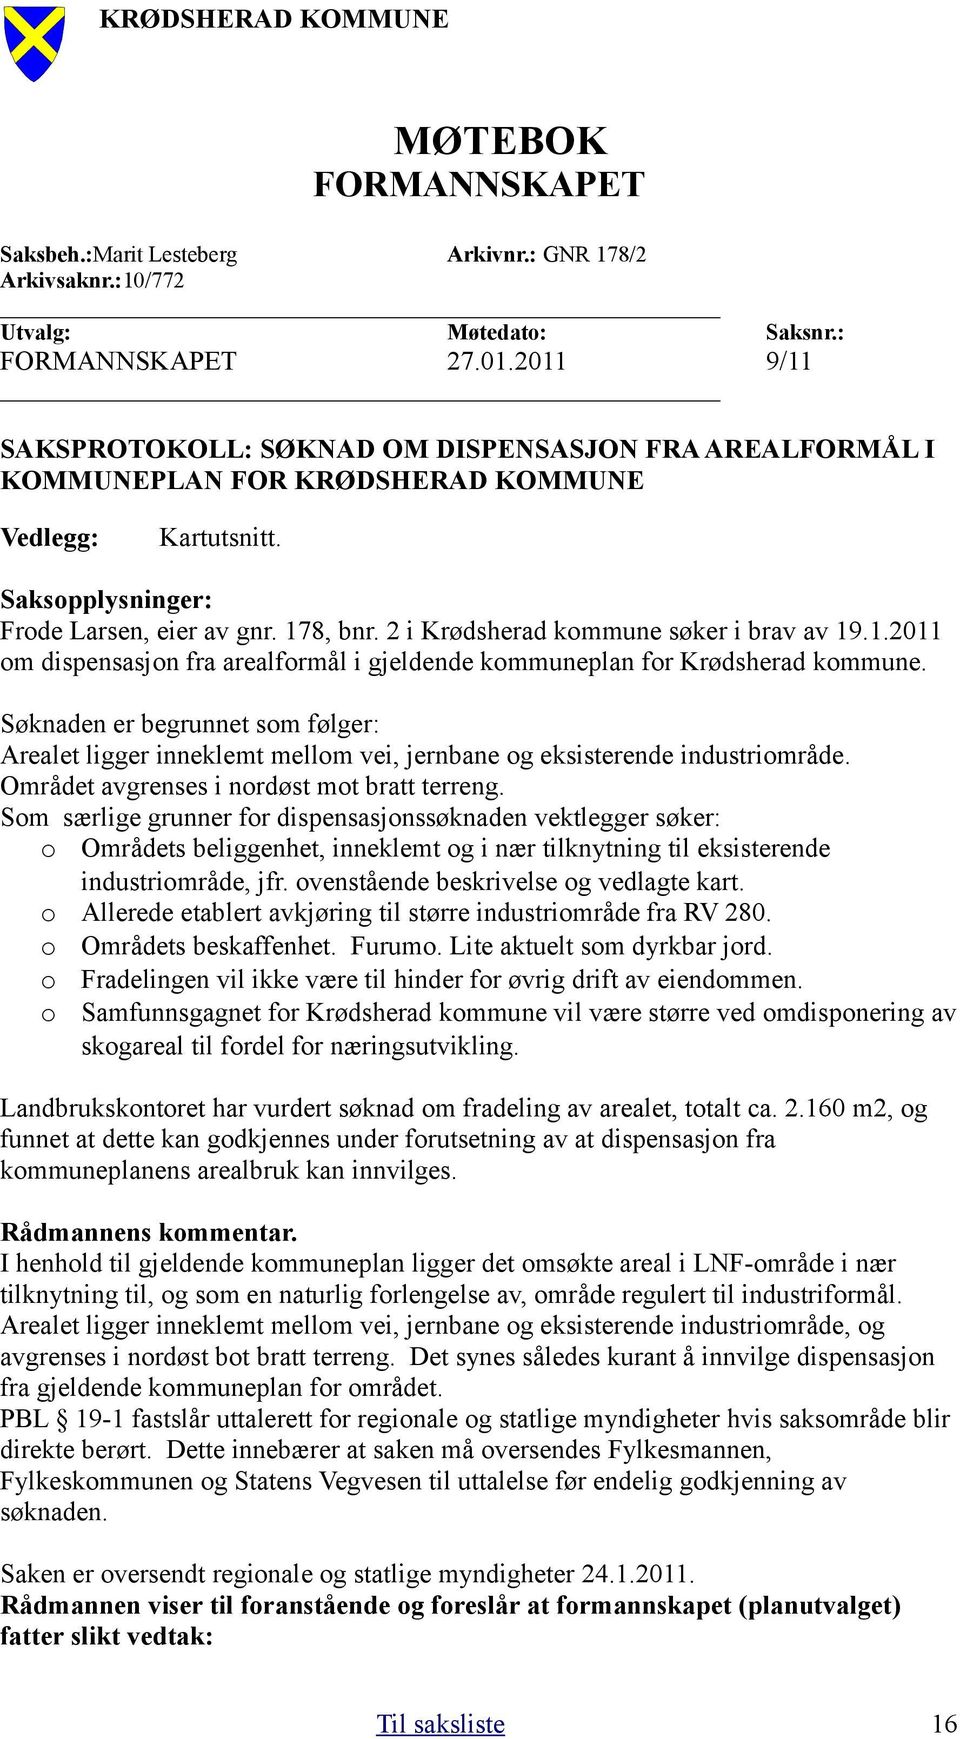 2 i Krødsherad kommune søker i brav av 19.1.2011 om dispensasjon fra arealformål i gjeldende kommuneplan for Krødsherad kommune.